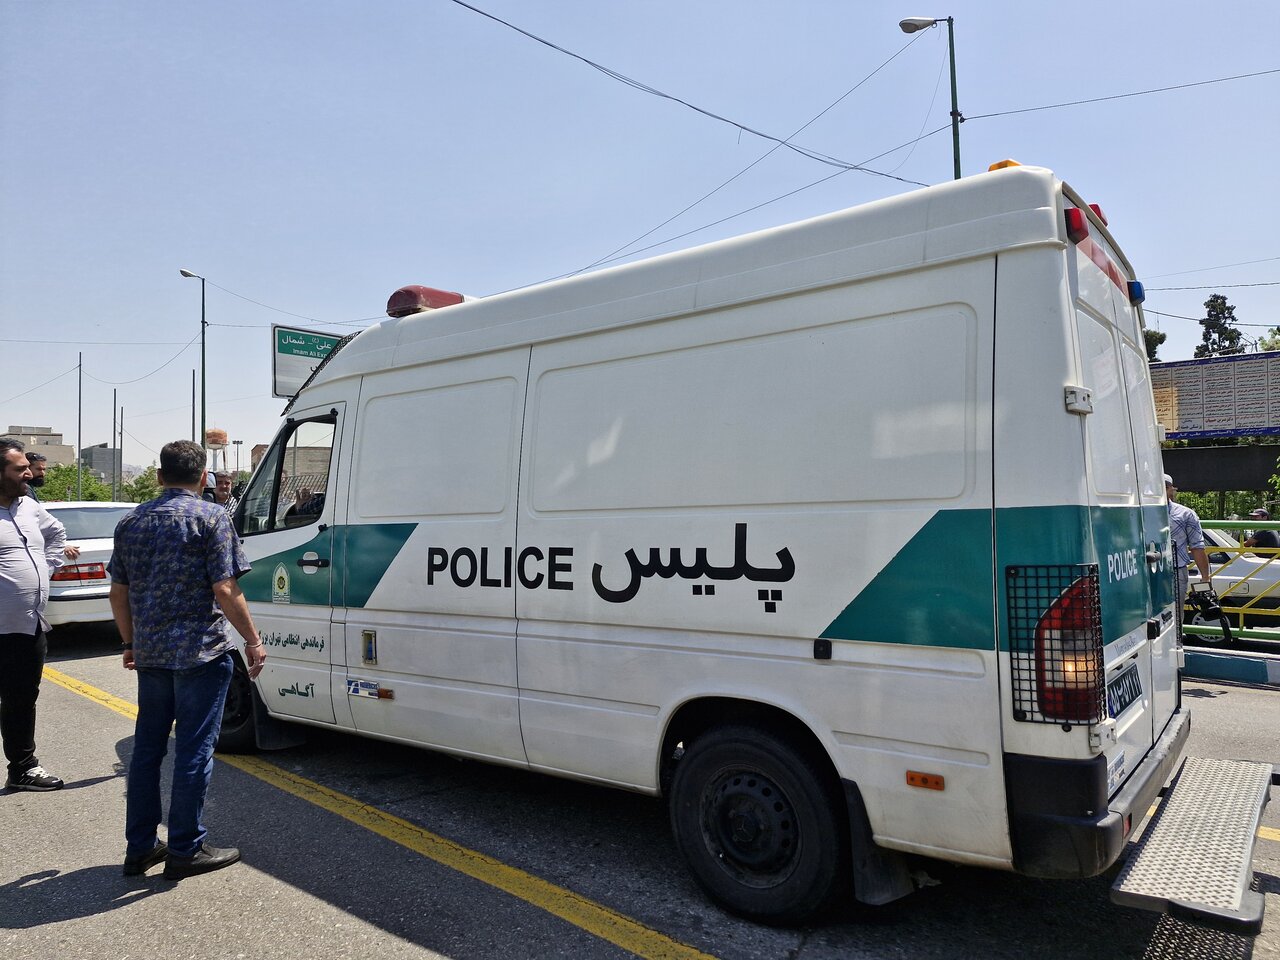 دستگیری عامل ضرب و شتم در اتوبوس/مجازات سنگین در انتظار این افراد – ارتباط فرهنگی